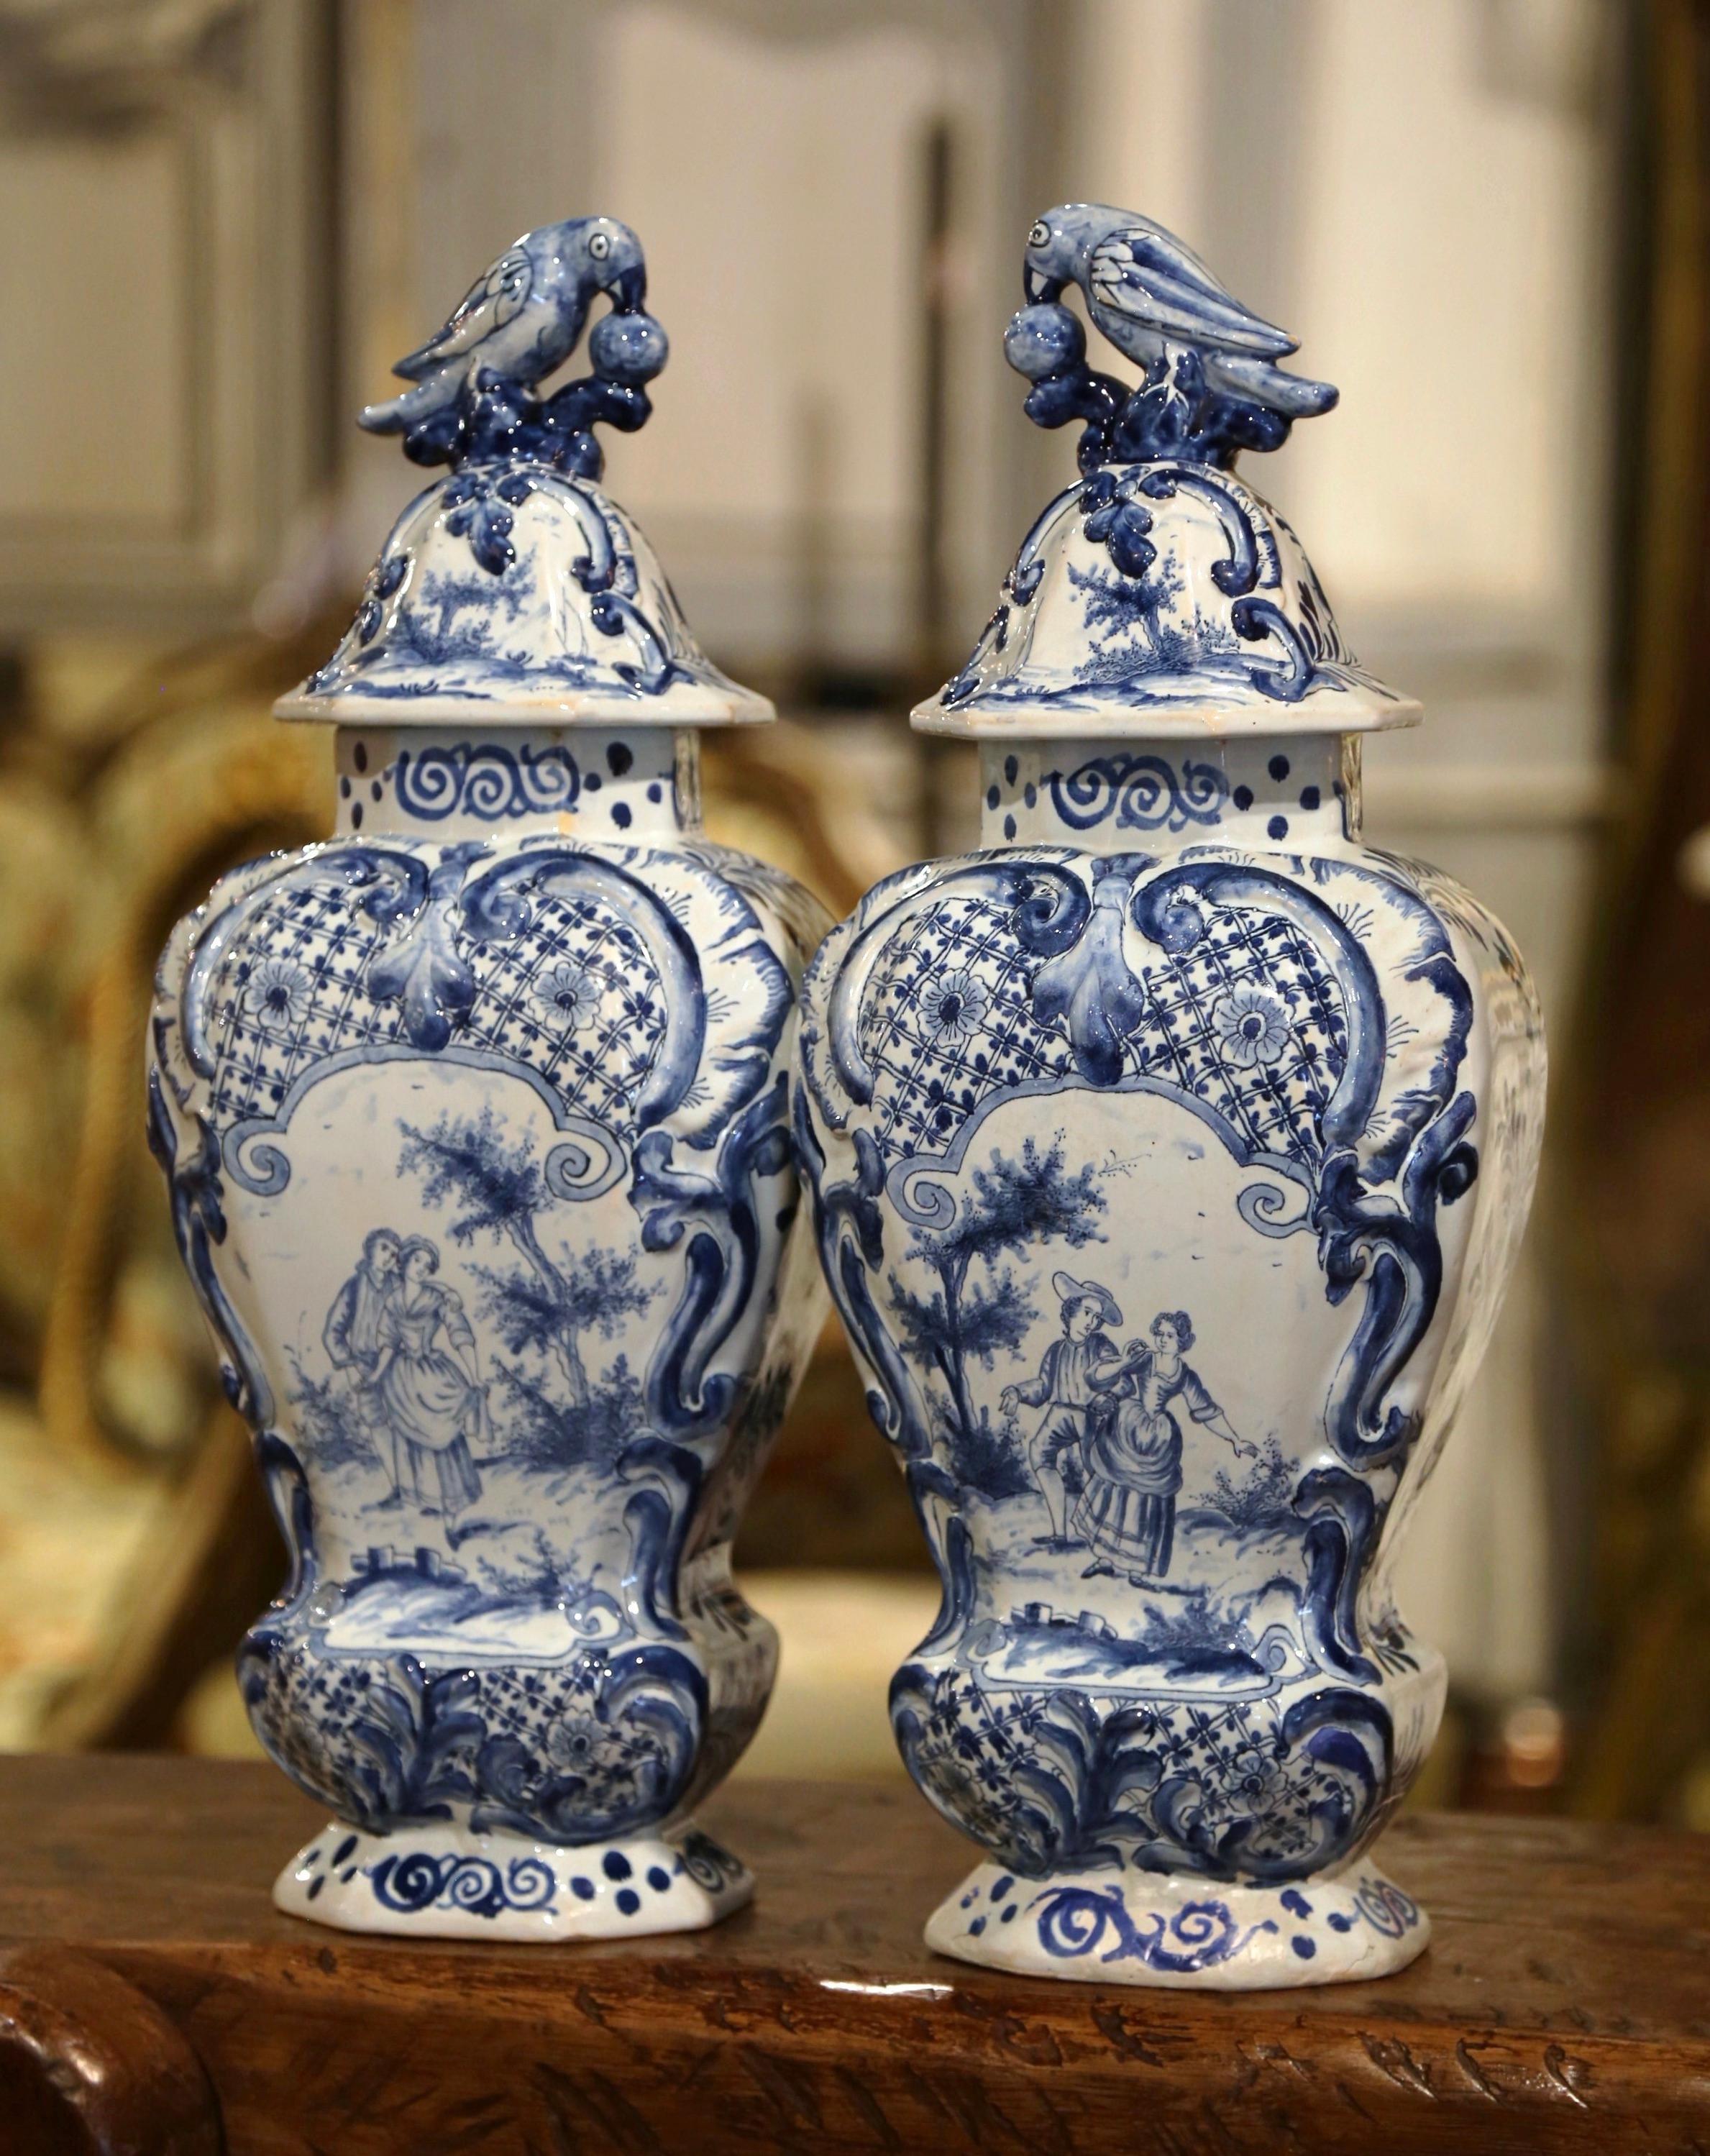 Ces vases classiques anciens de Delft ont été créés en France, vers 1860. Chaque pot élégant en porcelaine est décoré de médaillons de scènes romantiques finement peints et agrémenté d'un décor floral en haut-relief. Chaque couvercle est orné d'une